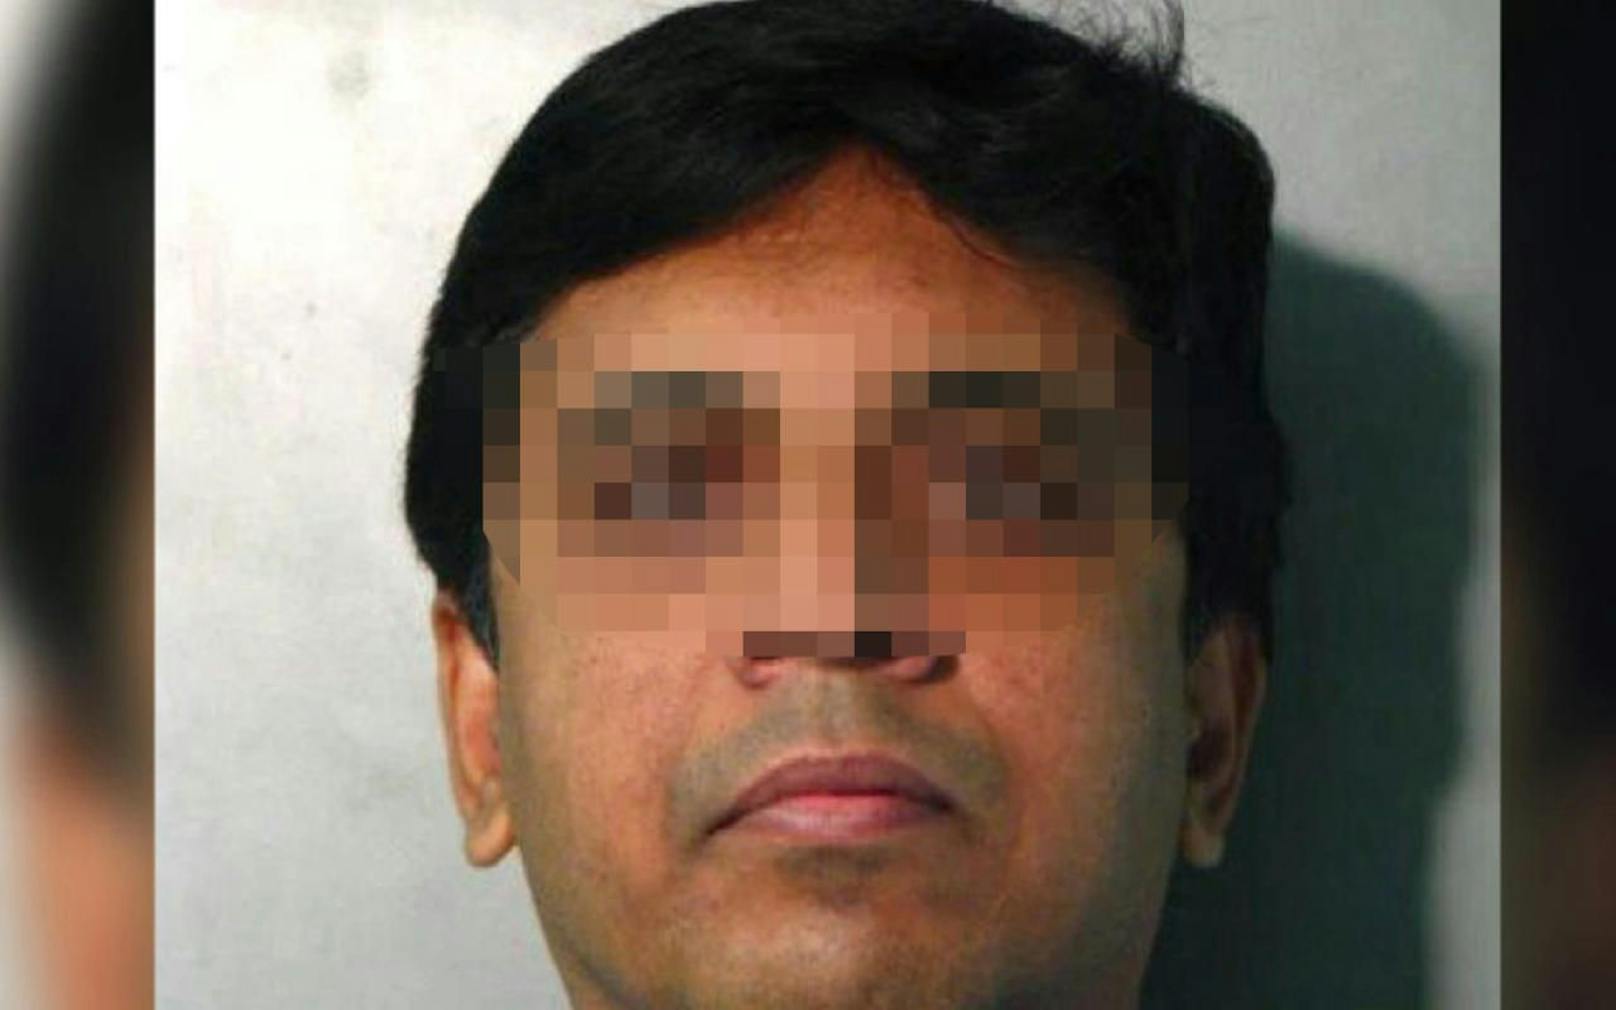 Chirurg Venkatesh S. (44) soll eine Schwester stranguliert haben. Für ihn gilt die Unschuldsvermutung. 